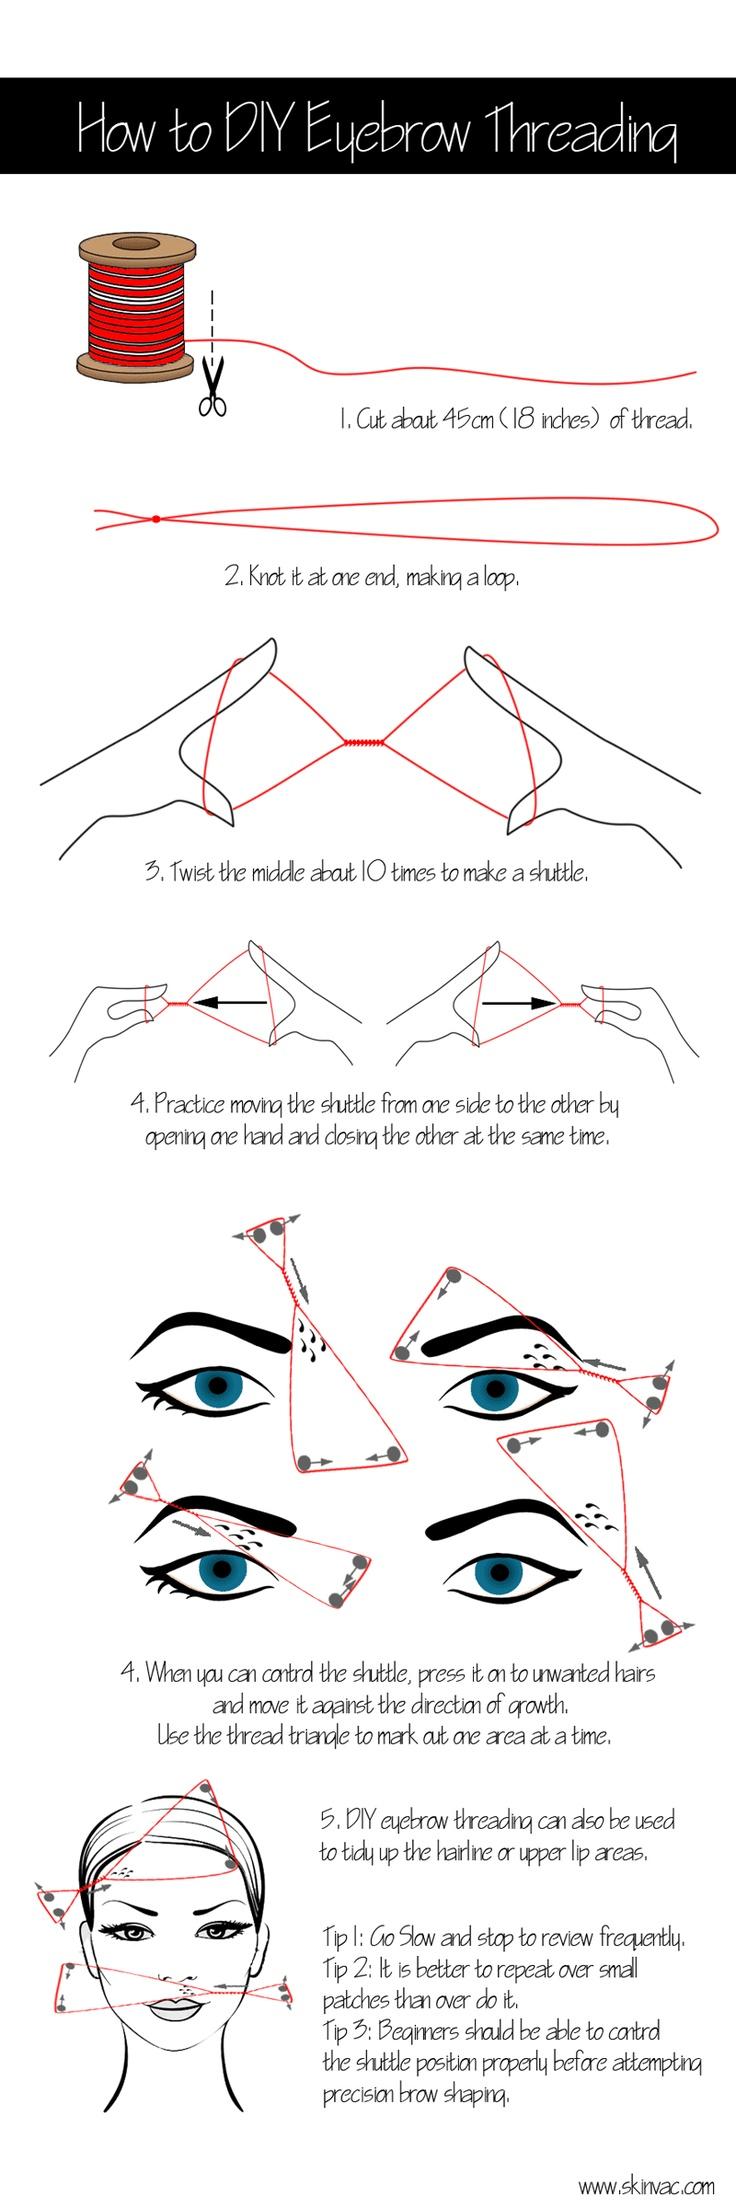 Hochzeit - How To Do-Augenbraue Threading selbst zu